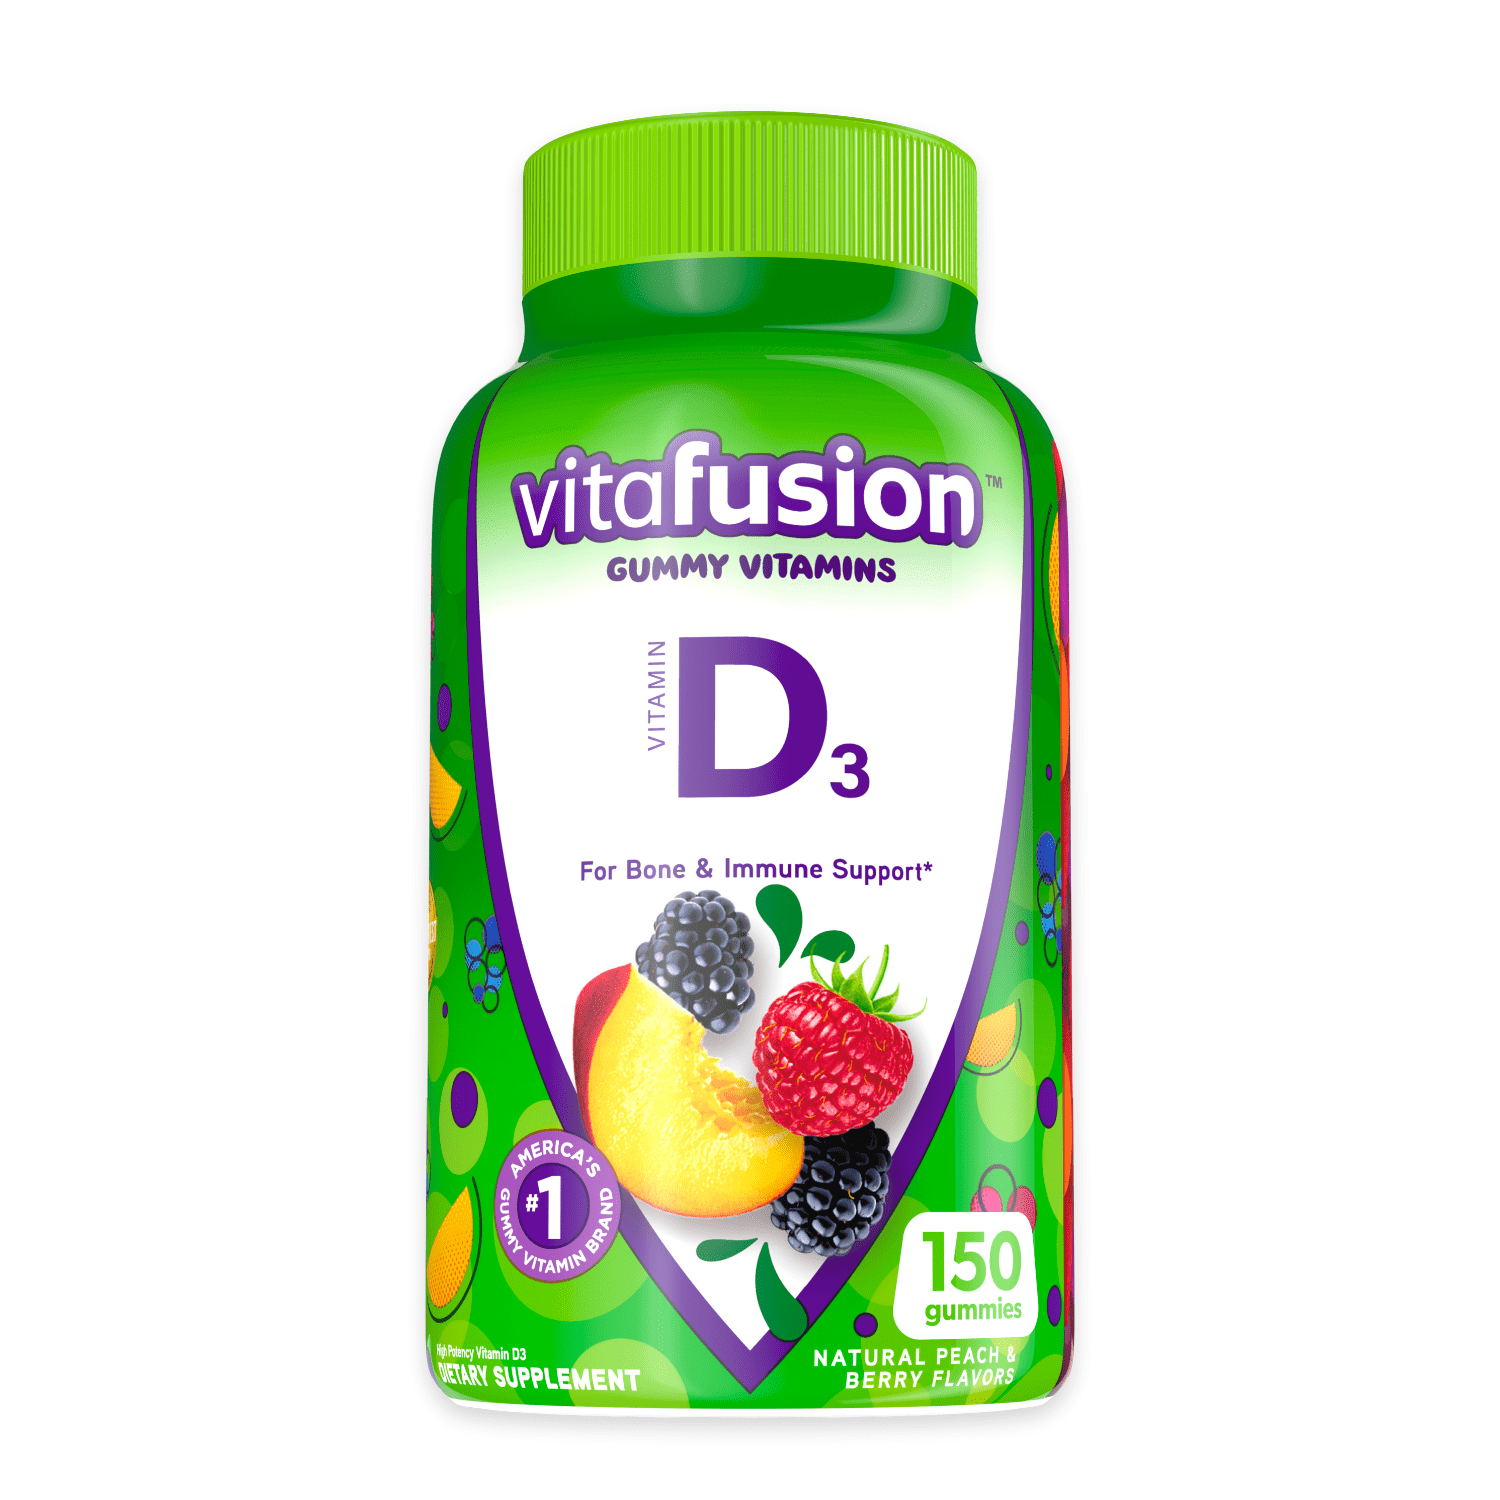 vitafusion Vitamin D3 Gummy Vitamins, Peach, Blackberry and Strawberry Flavored, 150 Count